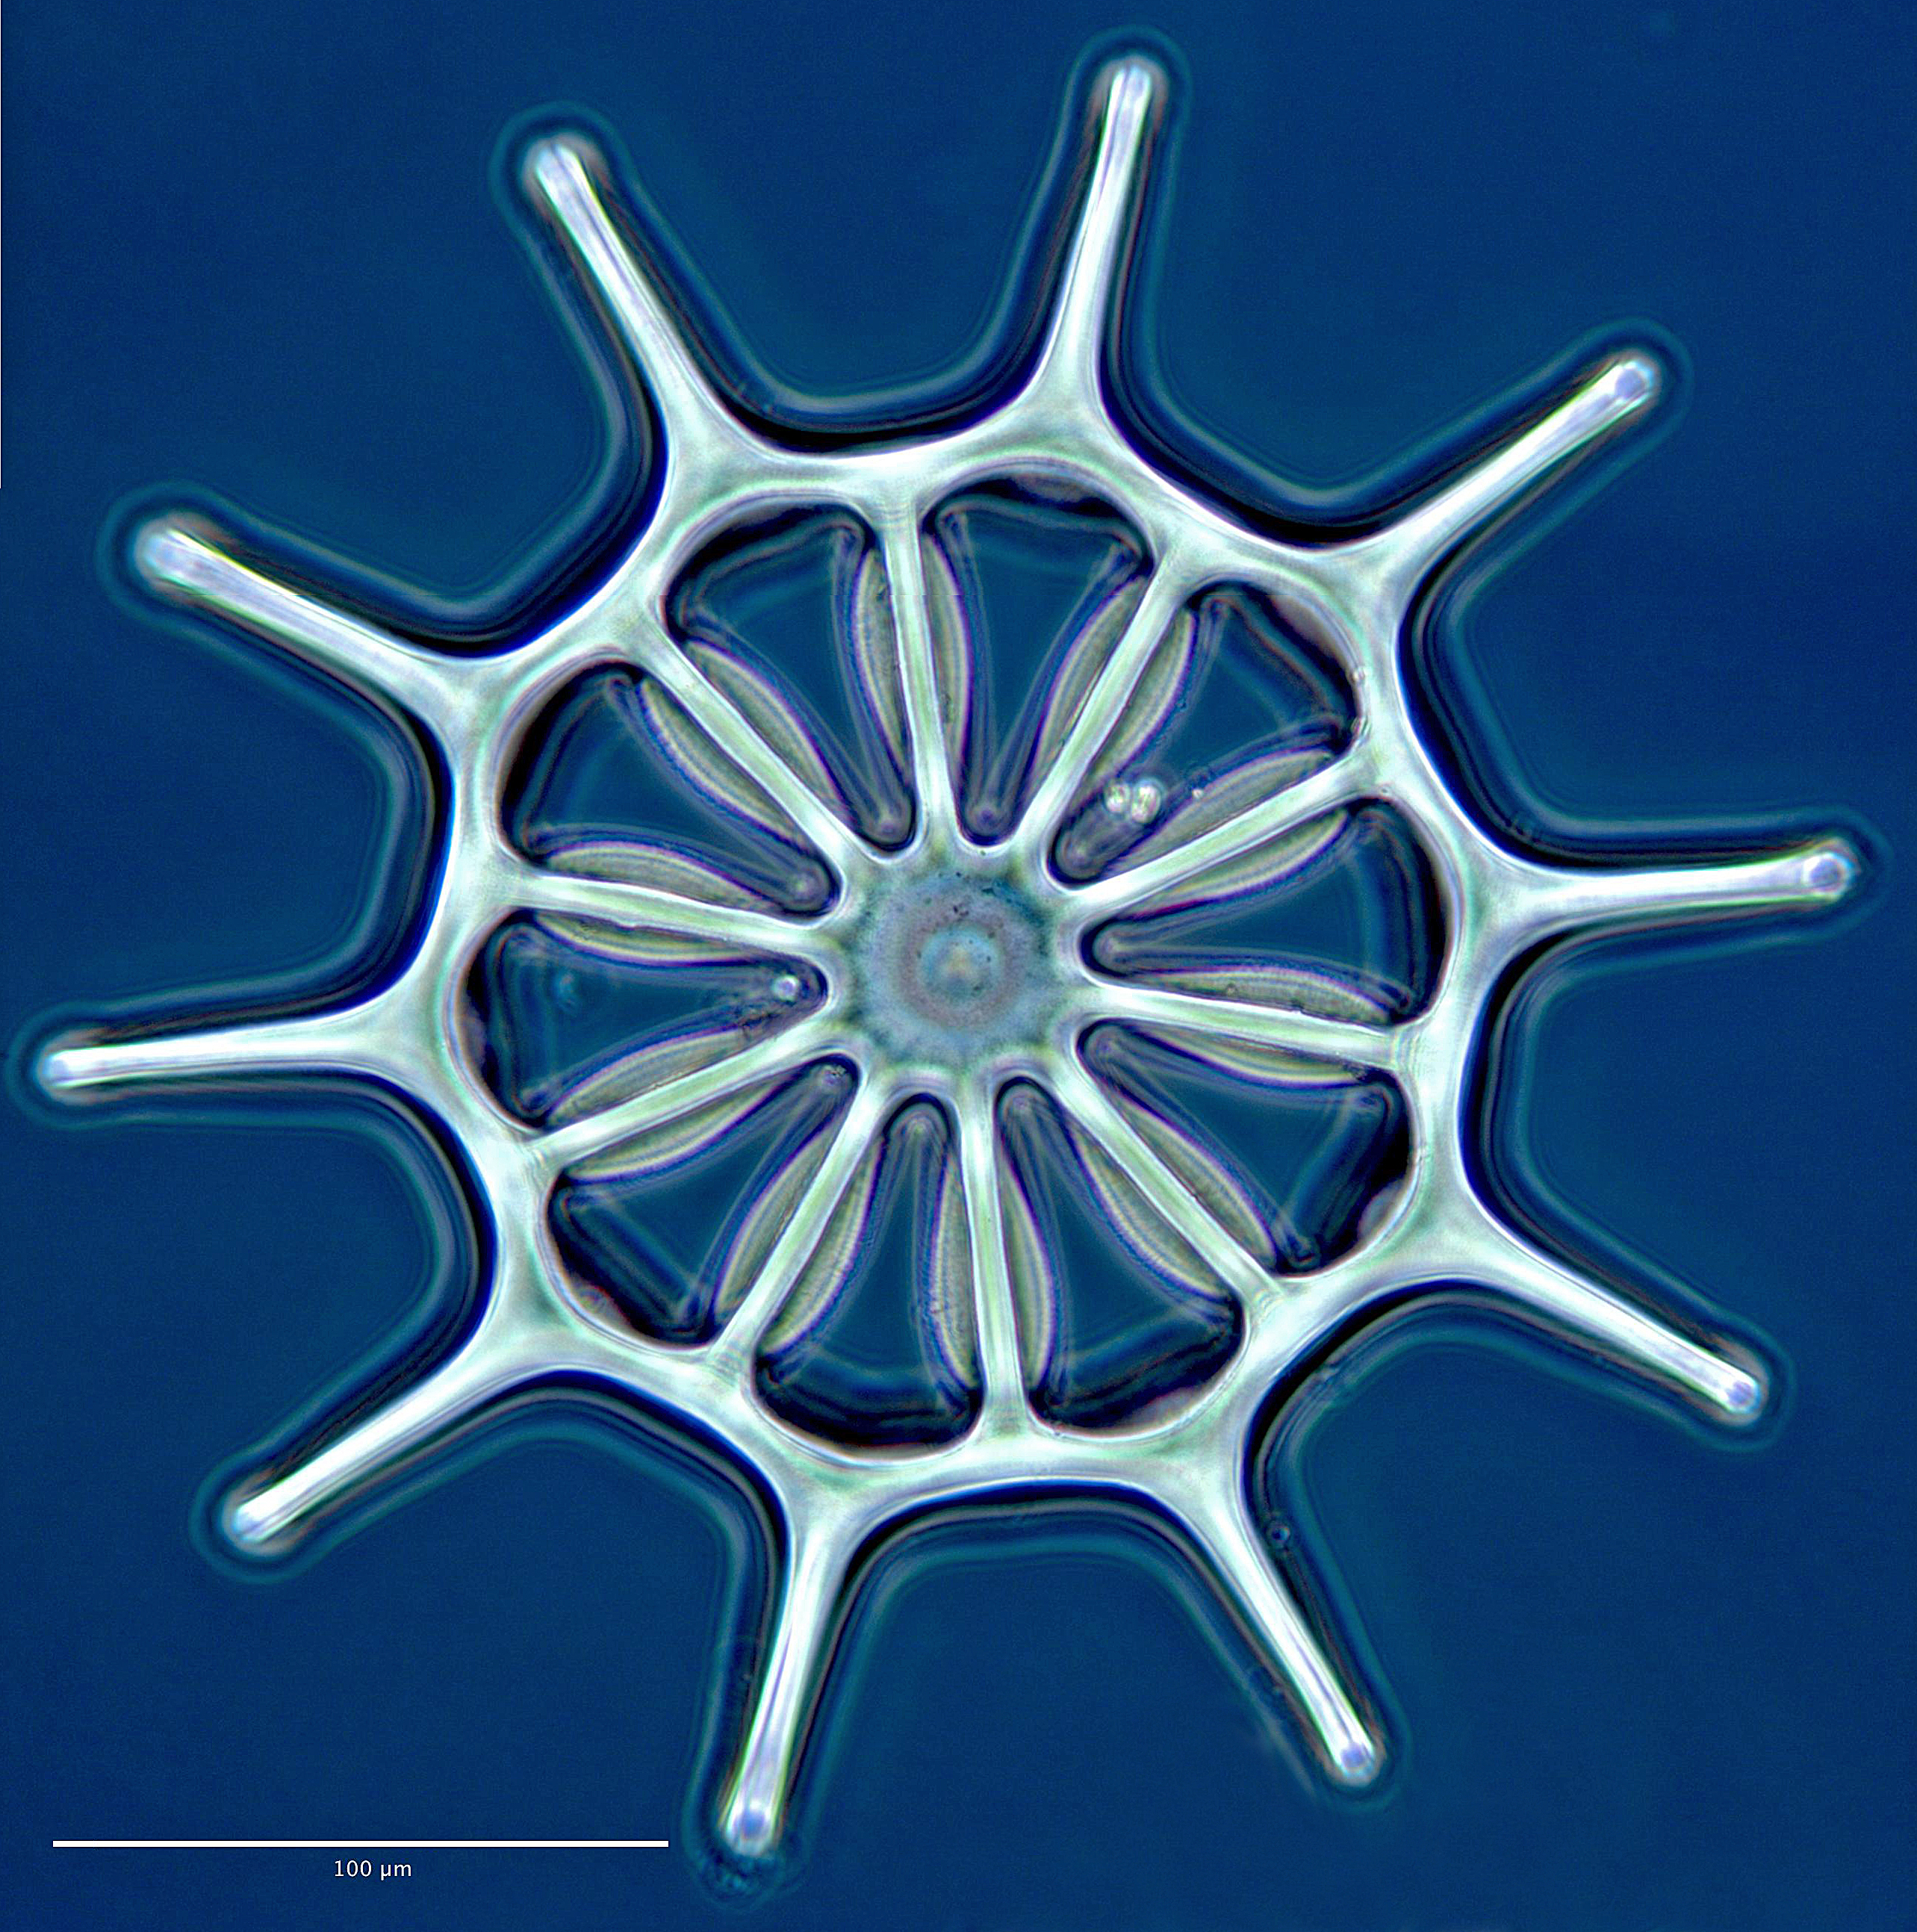 Bilde av hjulformet struktur på huden til en sjøpølse.